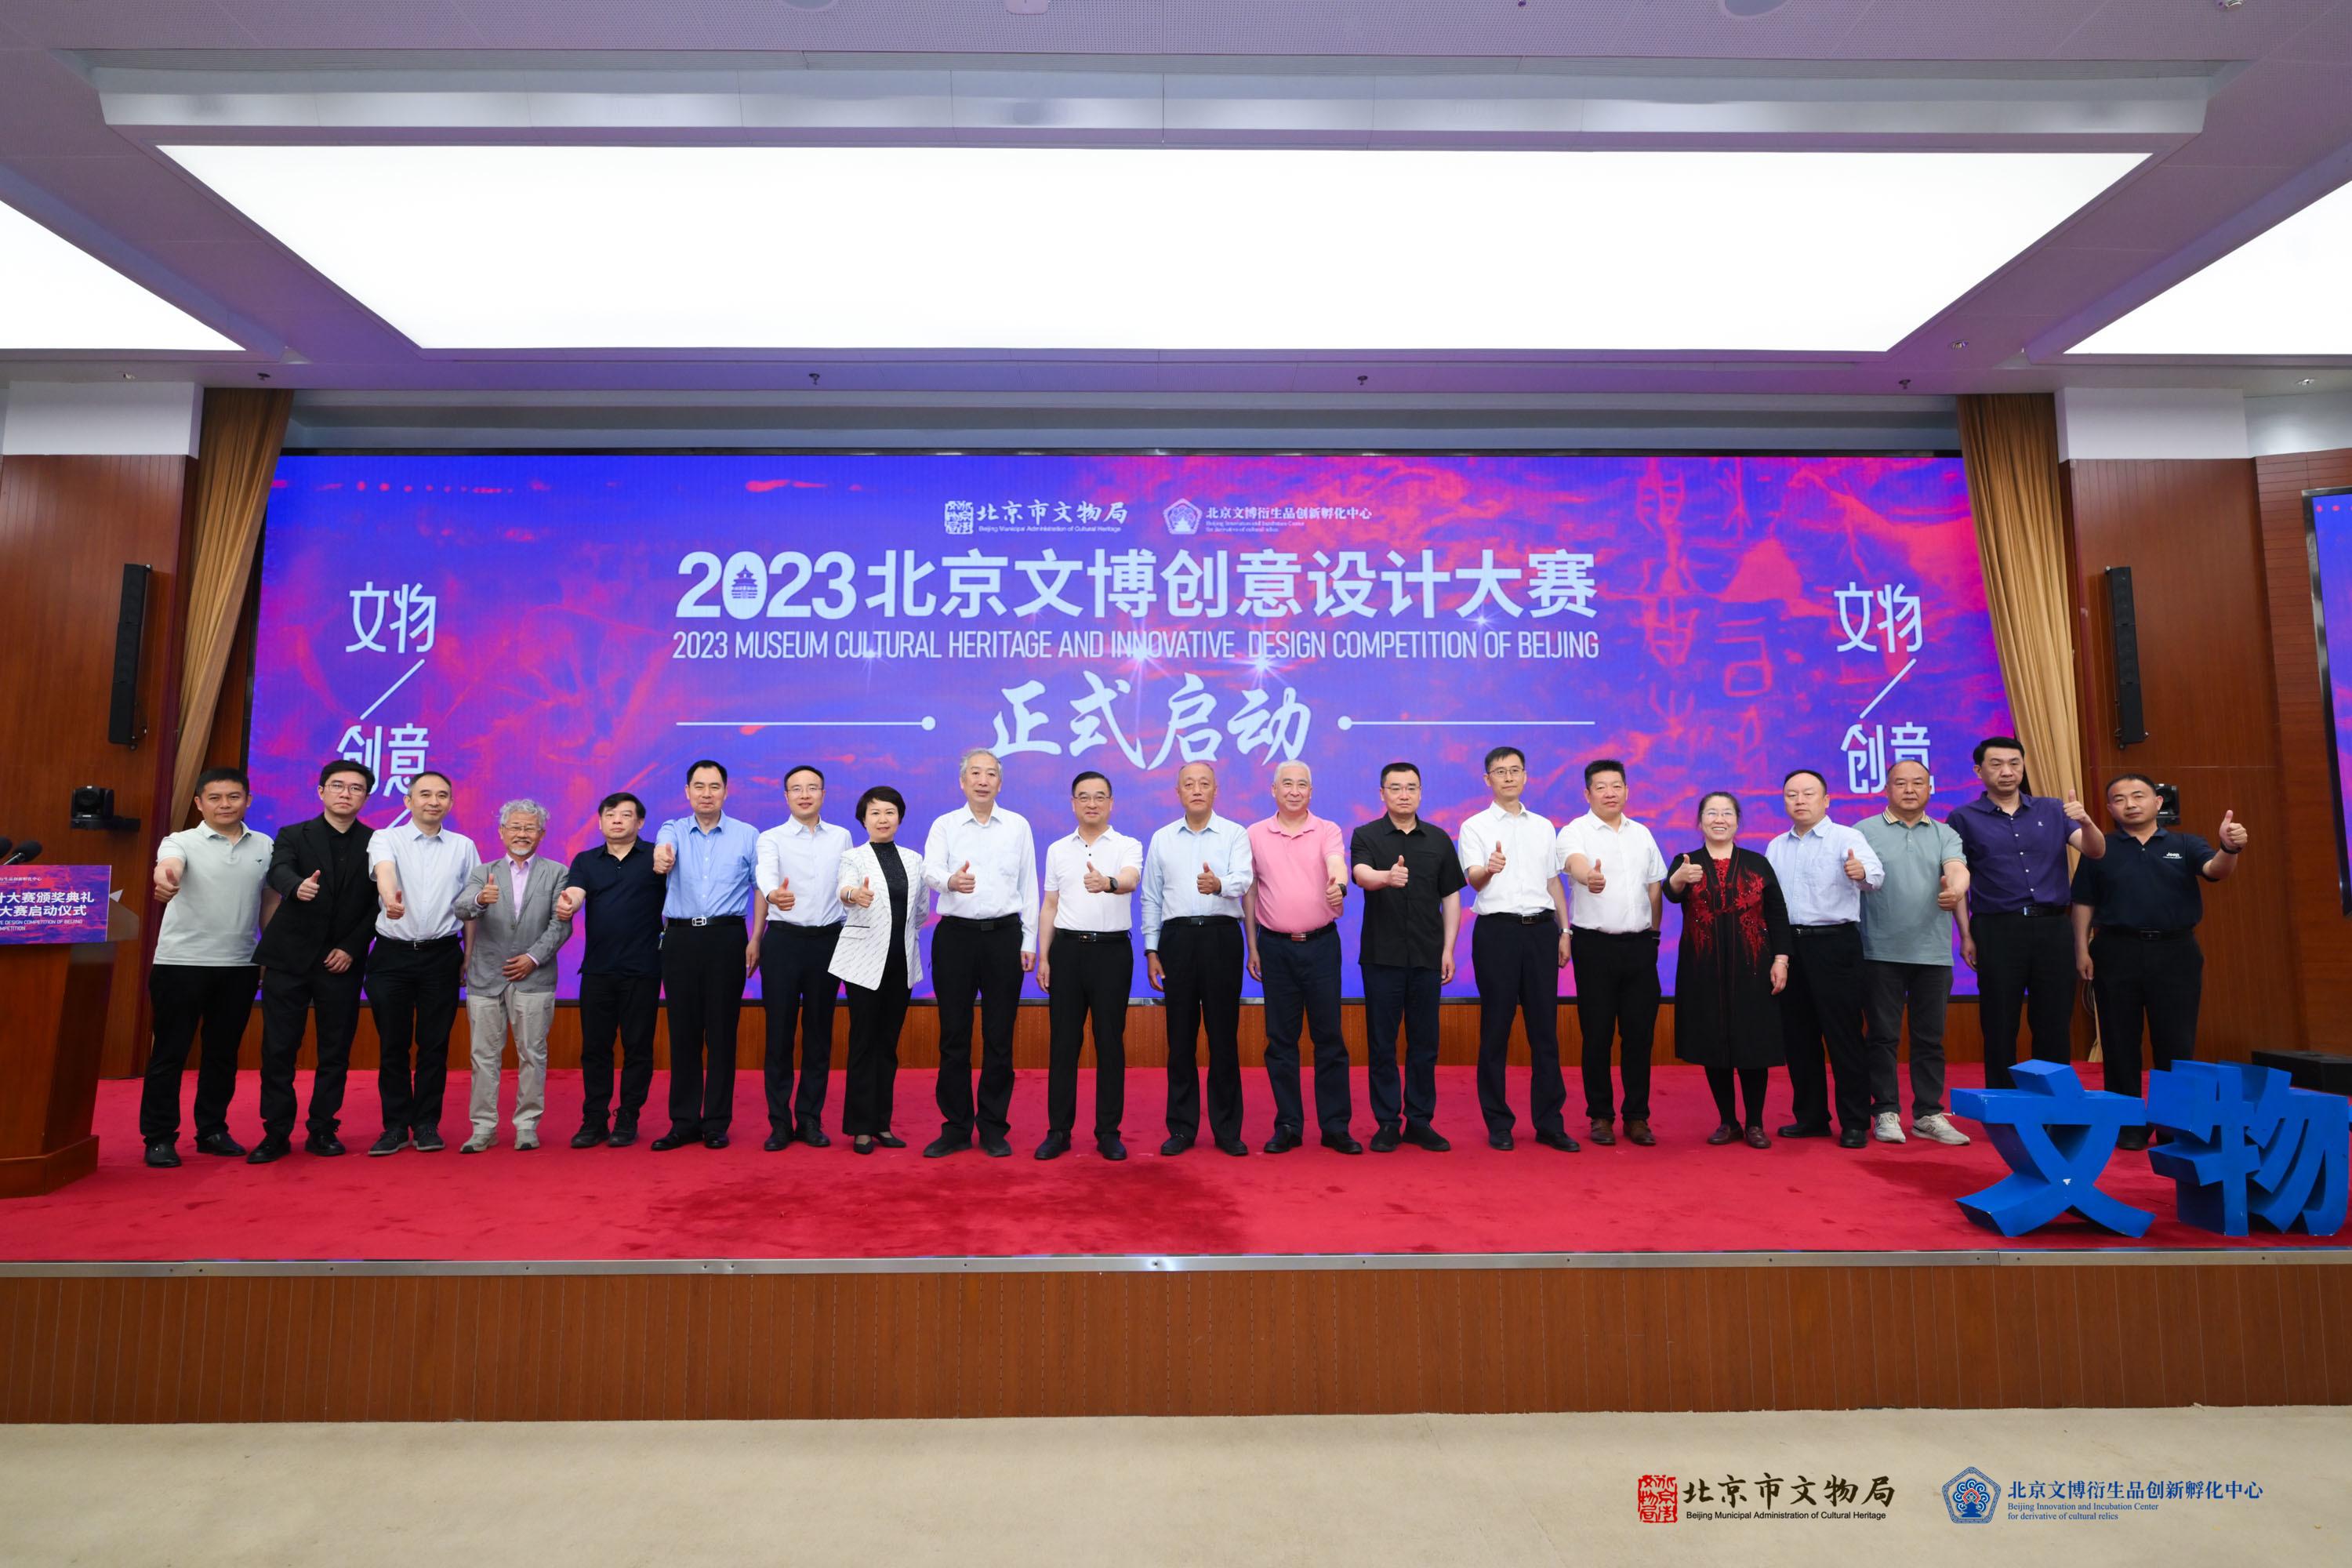 2022年度北京文博创意设计大赛颁奖典礼暨2023北京文博创意设计大赛